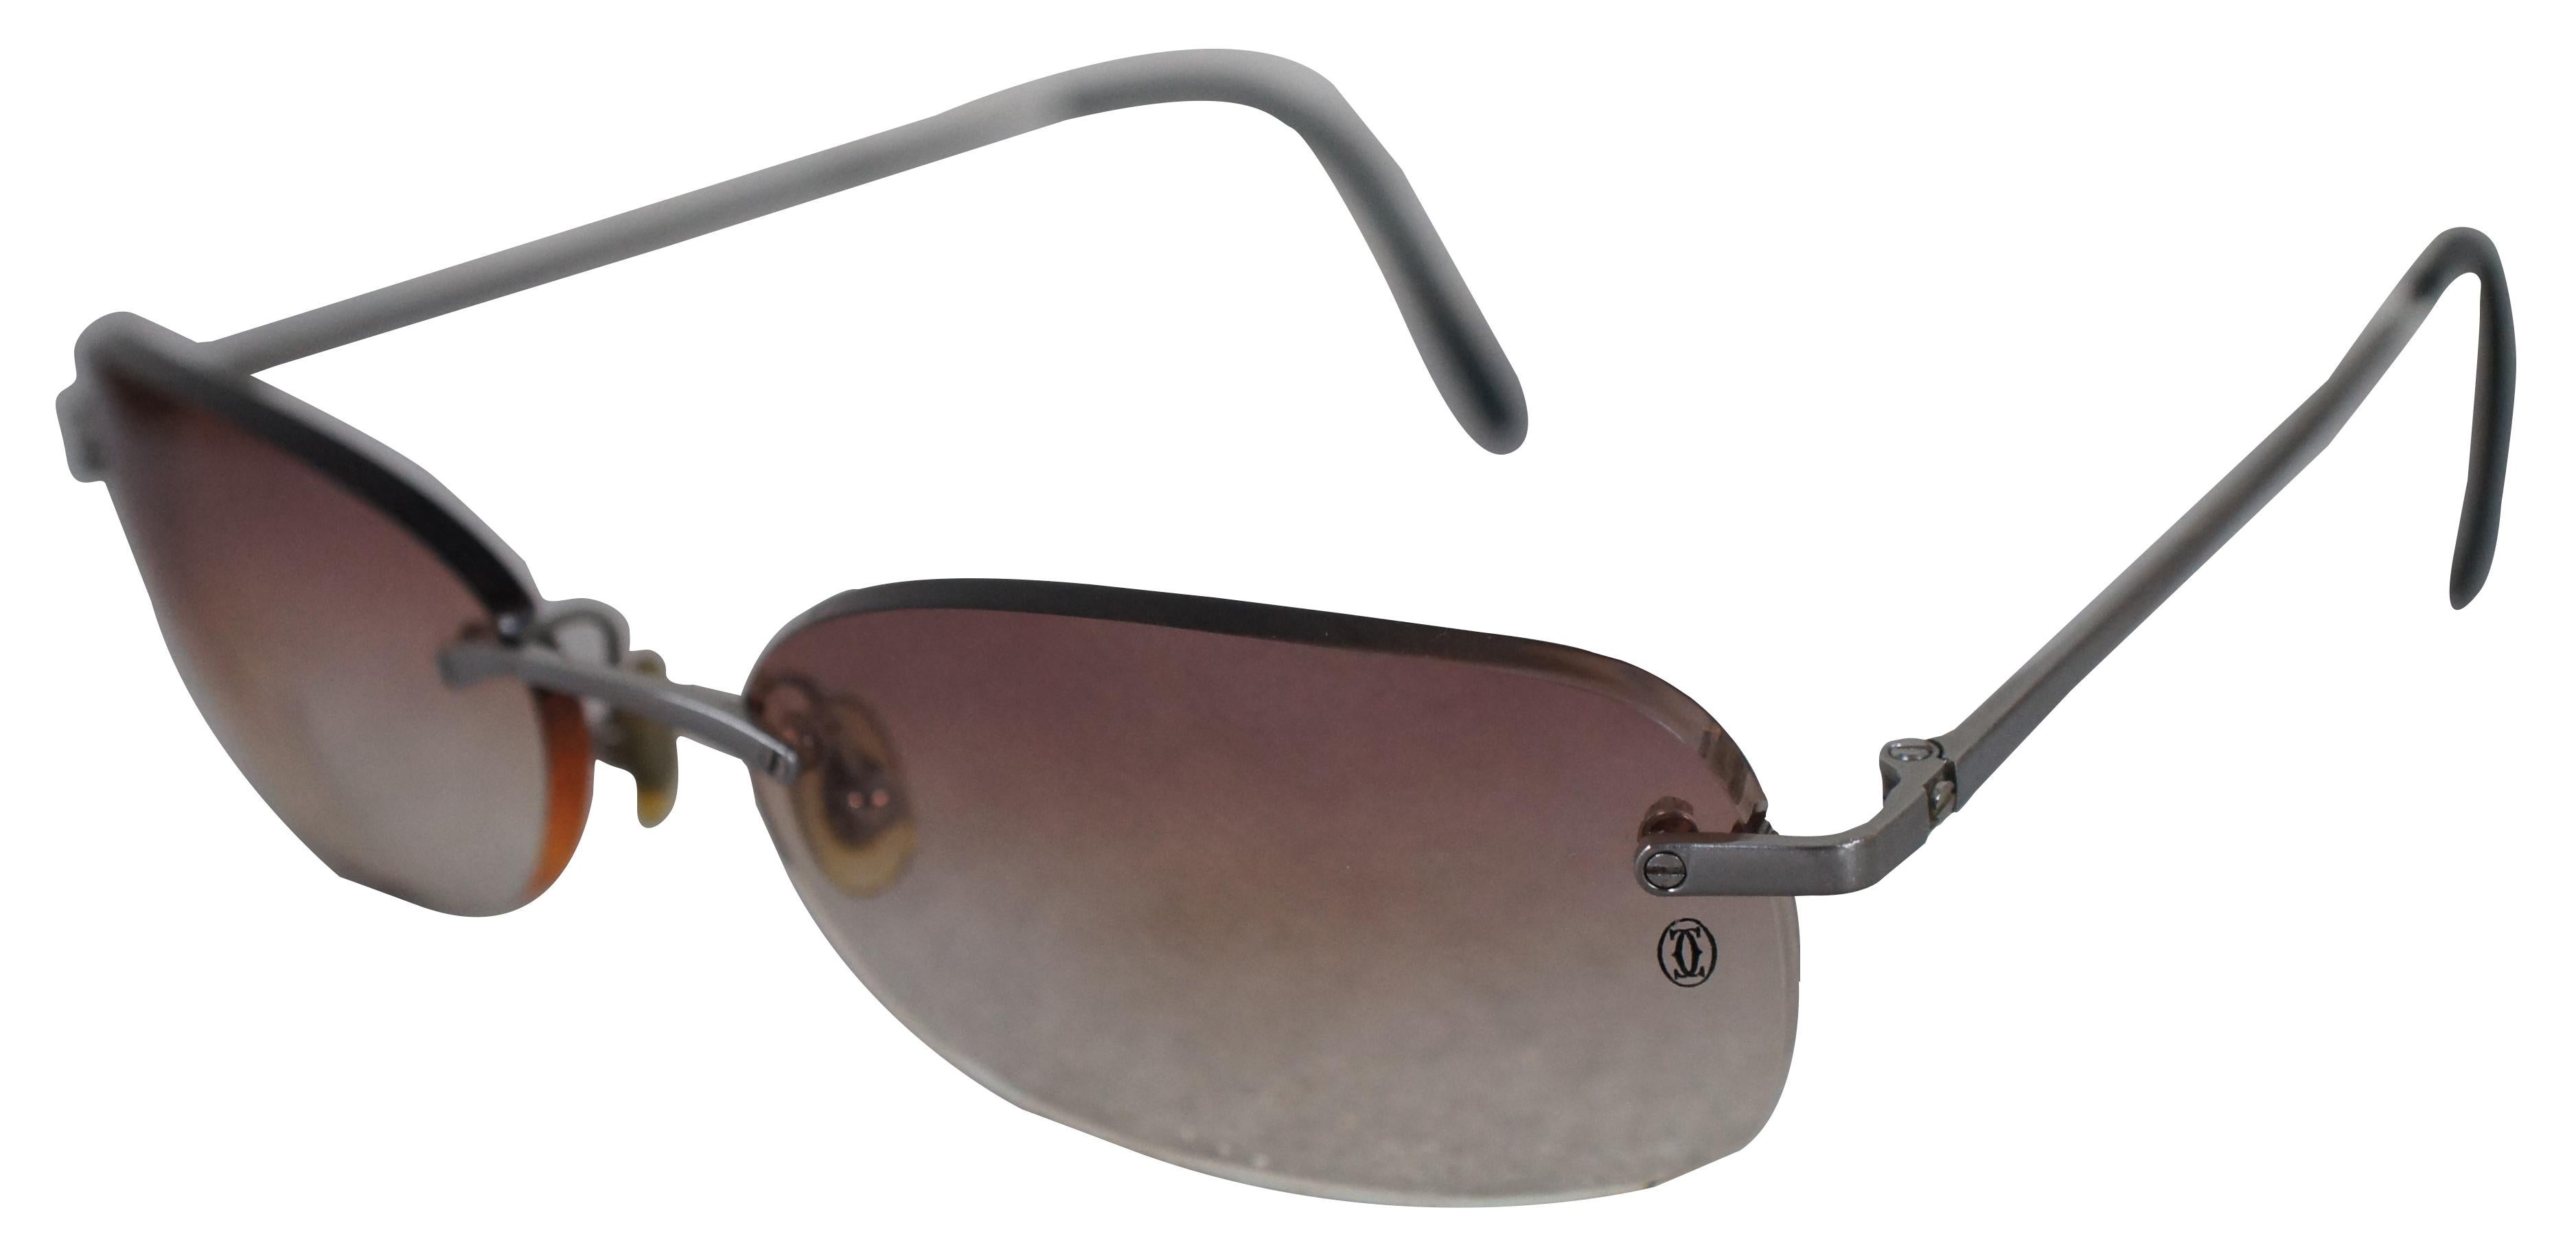 Randlose Sonnenbrille Cartier Titanium 18 135 mit rosafarbenen Verlaufsgläsern; Seriennummer 3443005. Inklusive Ledertasche, Objektivtuch und Originalverpackung.
 